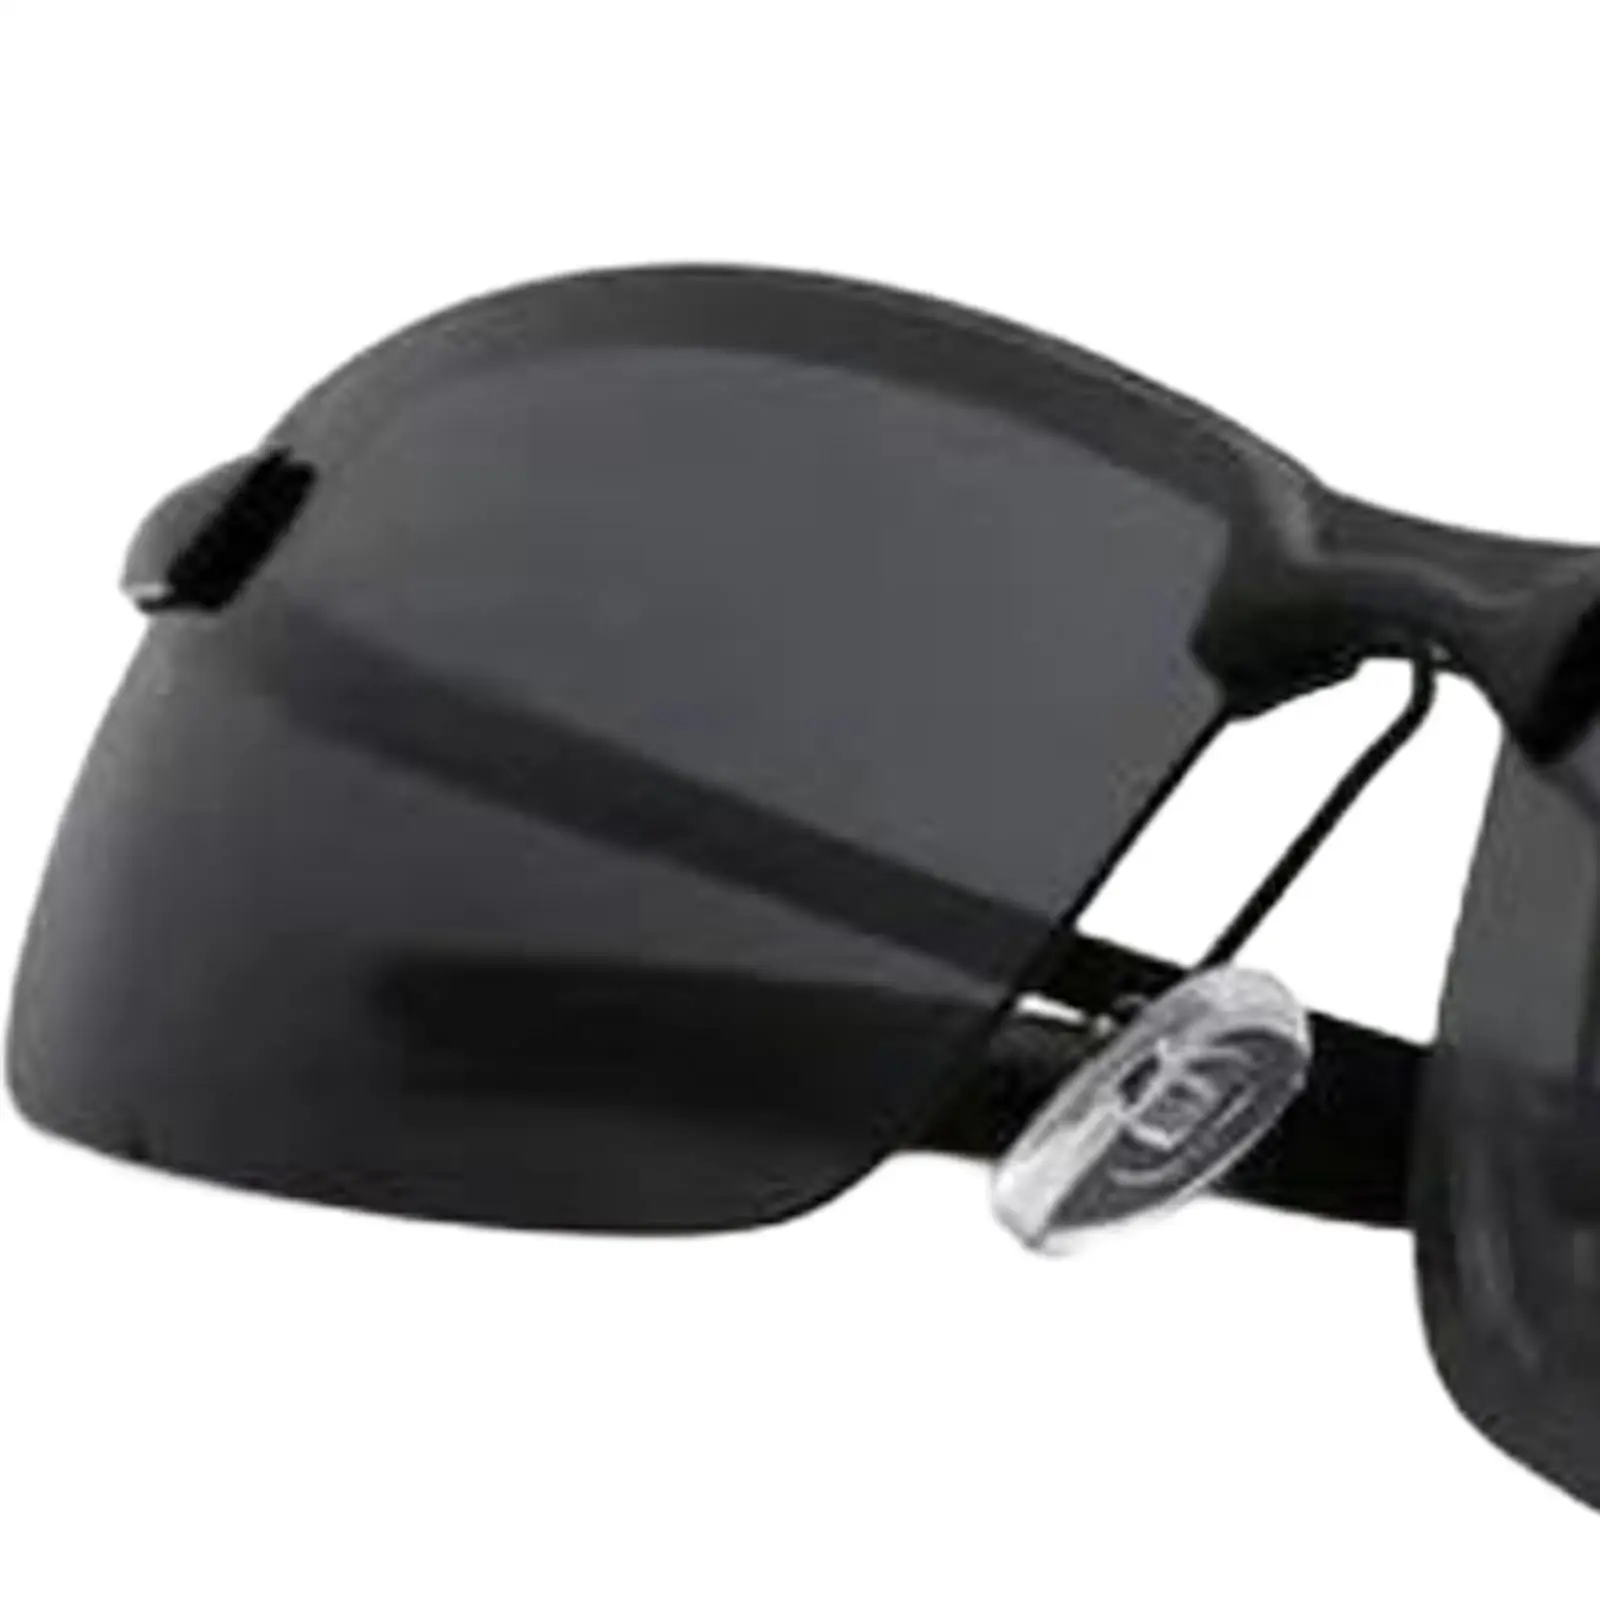 Polarized Sunglasses for Men, Lightweight Sun Glasses for Driving Fishing Golf